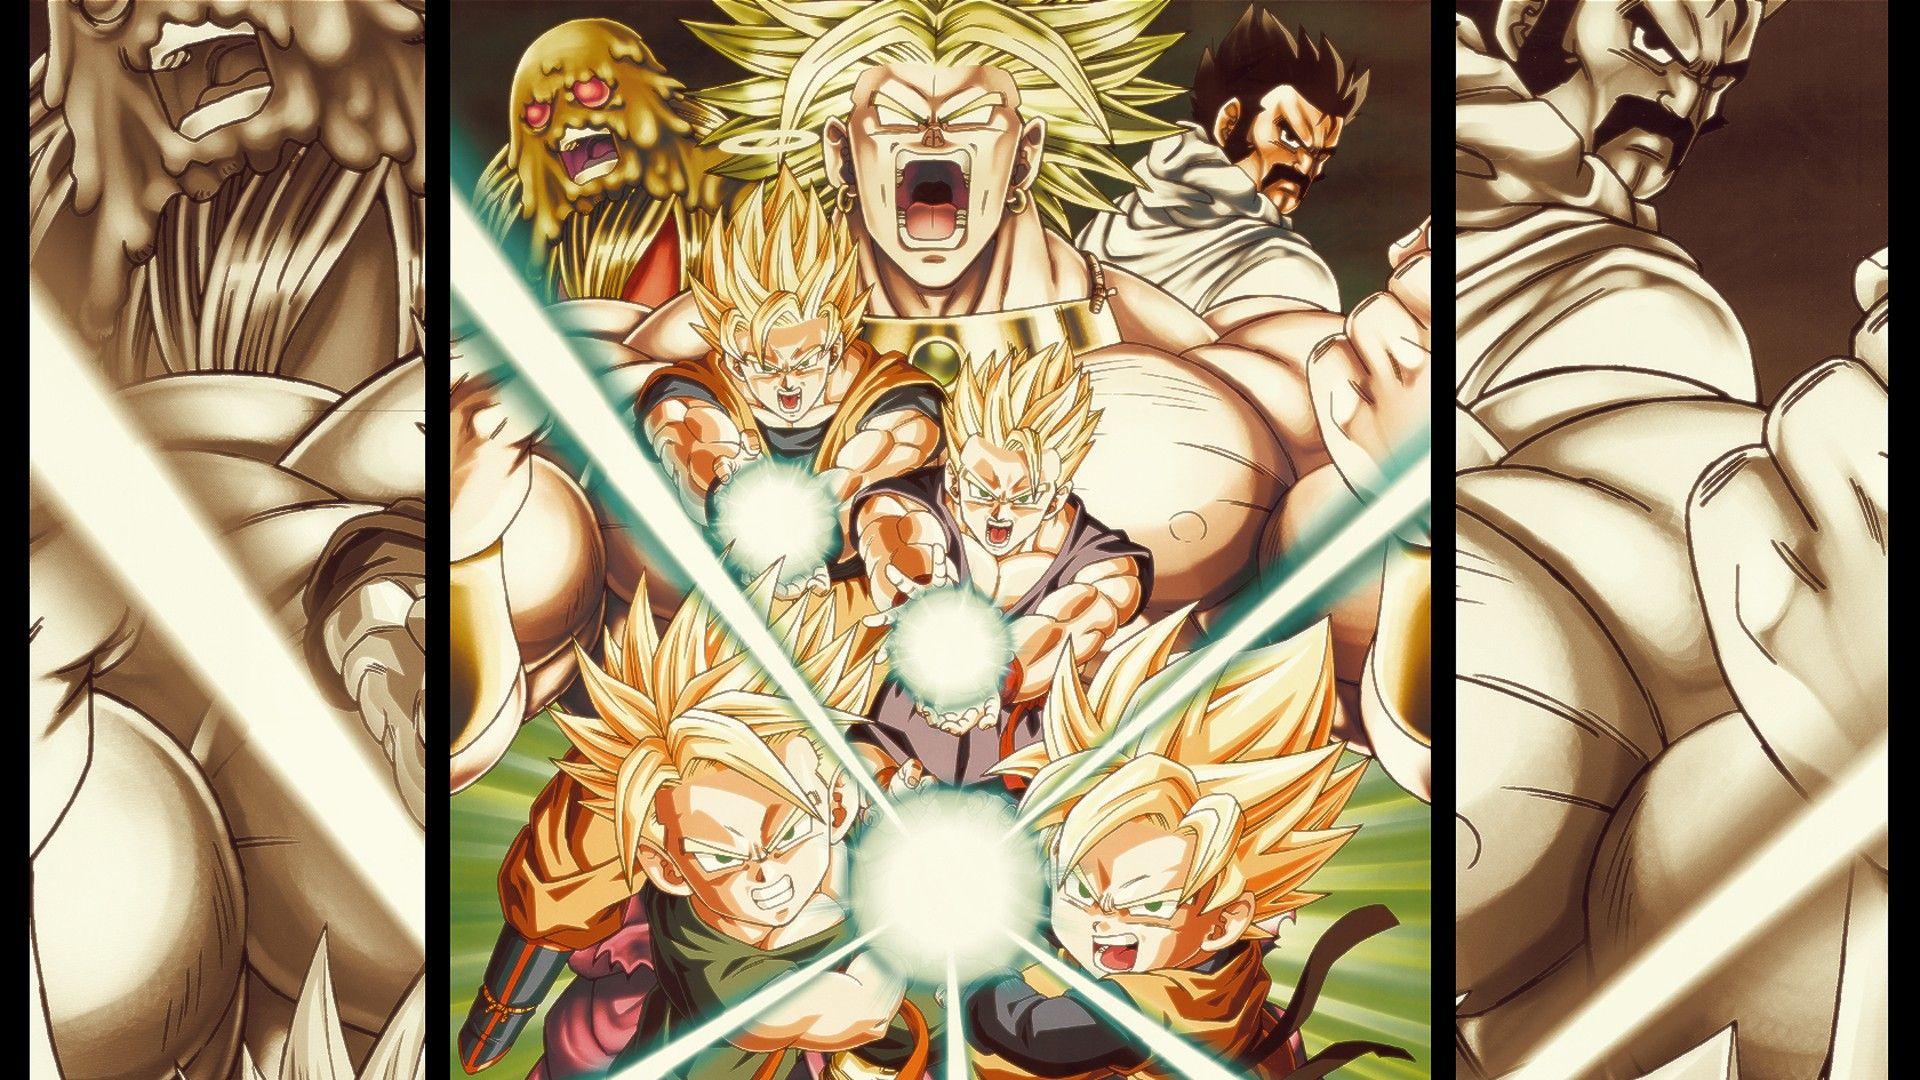 Dragon Ball Z Wallpaper